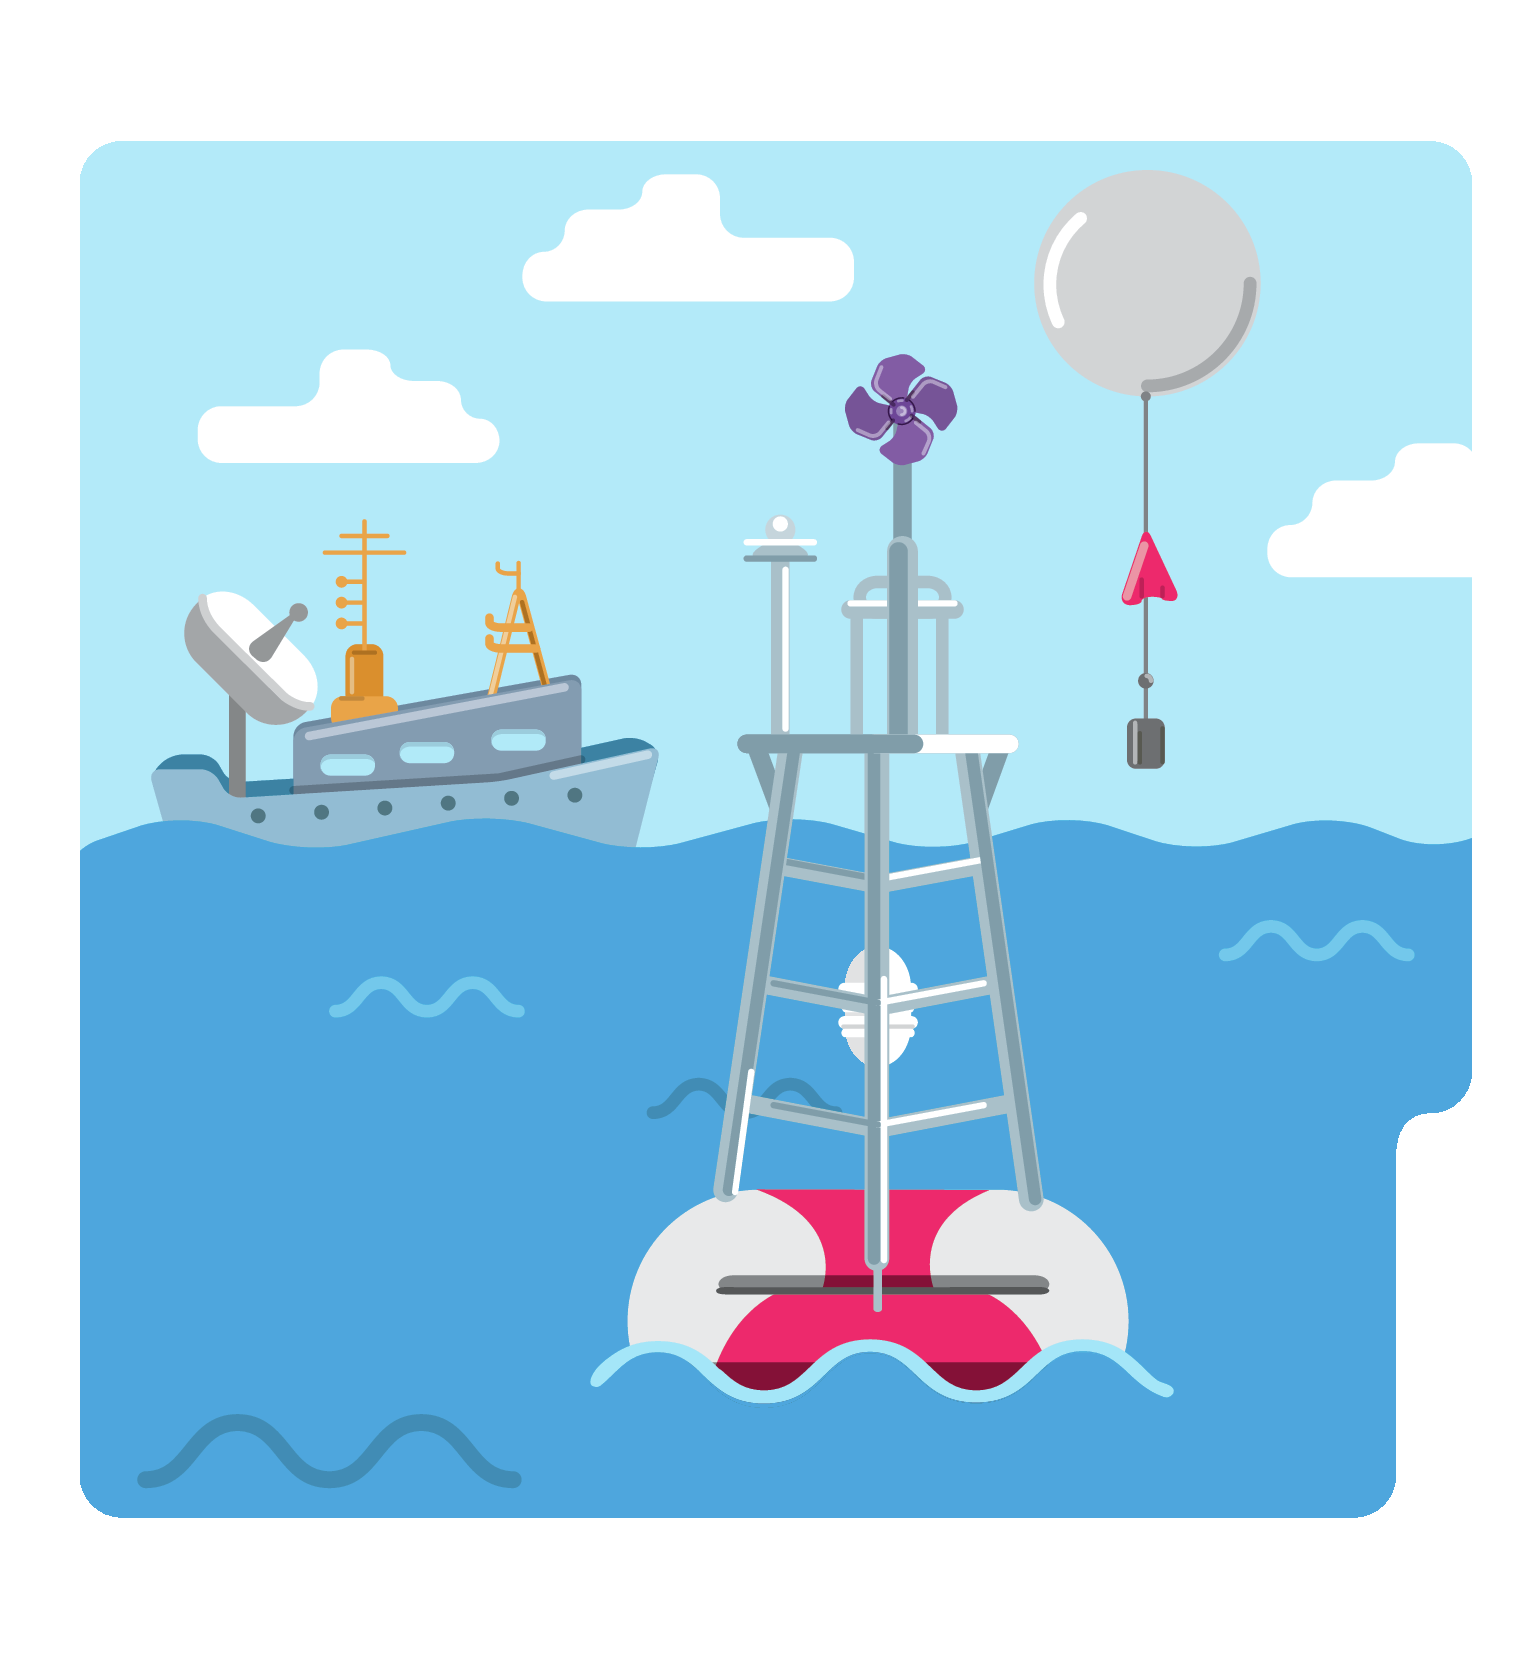 Ilustração. Uma estrutura com um cata-vento em uma boia no mar. Há um balão com uma estrutura triangular e outra retangular penduradas. Ao fundo, um navio com torres e uma antena.